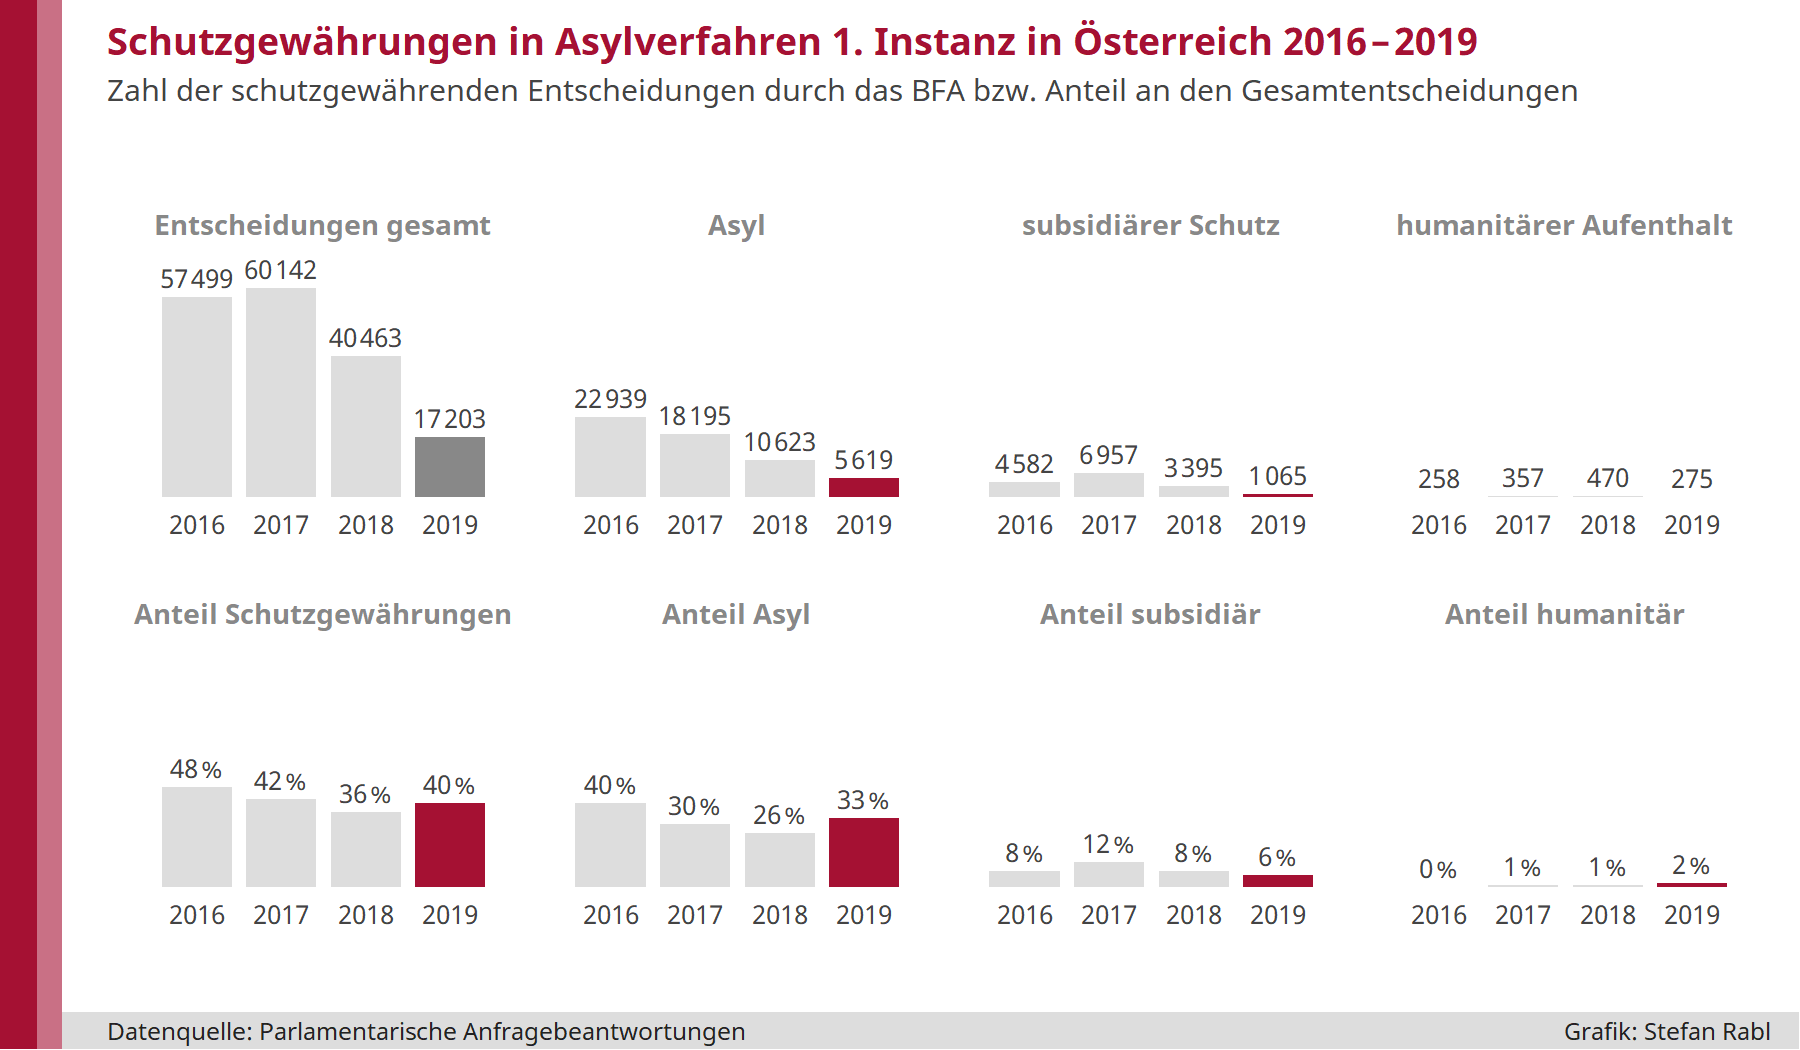 Grafik: Schutzgewährungen in Asylverfahren erster Instanz in Österreich 2016 bis 2019